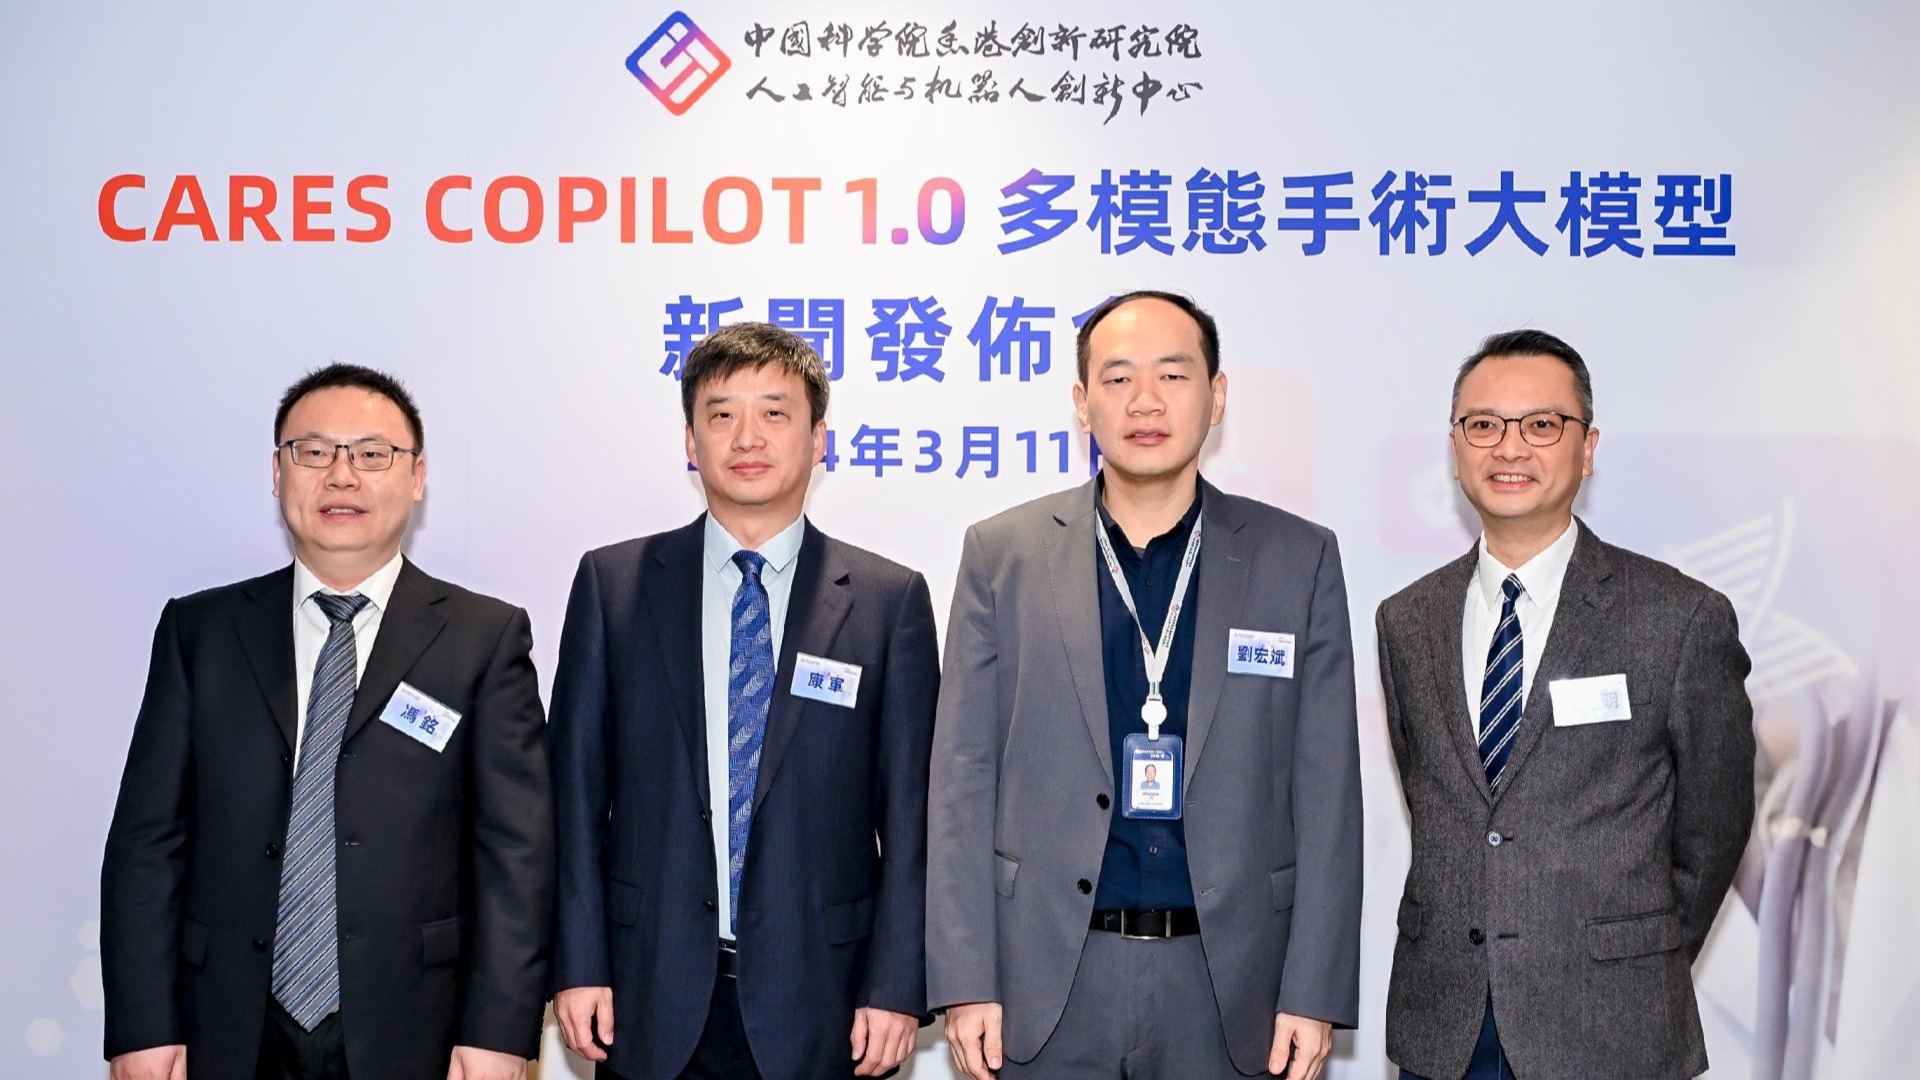 AI 赋能智慧手术：中国科学院香港创新院 AI 中心发布「多模态手术大模型CARES Copilot 1.0」